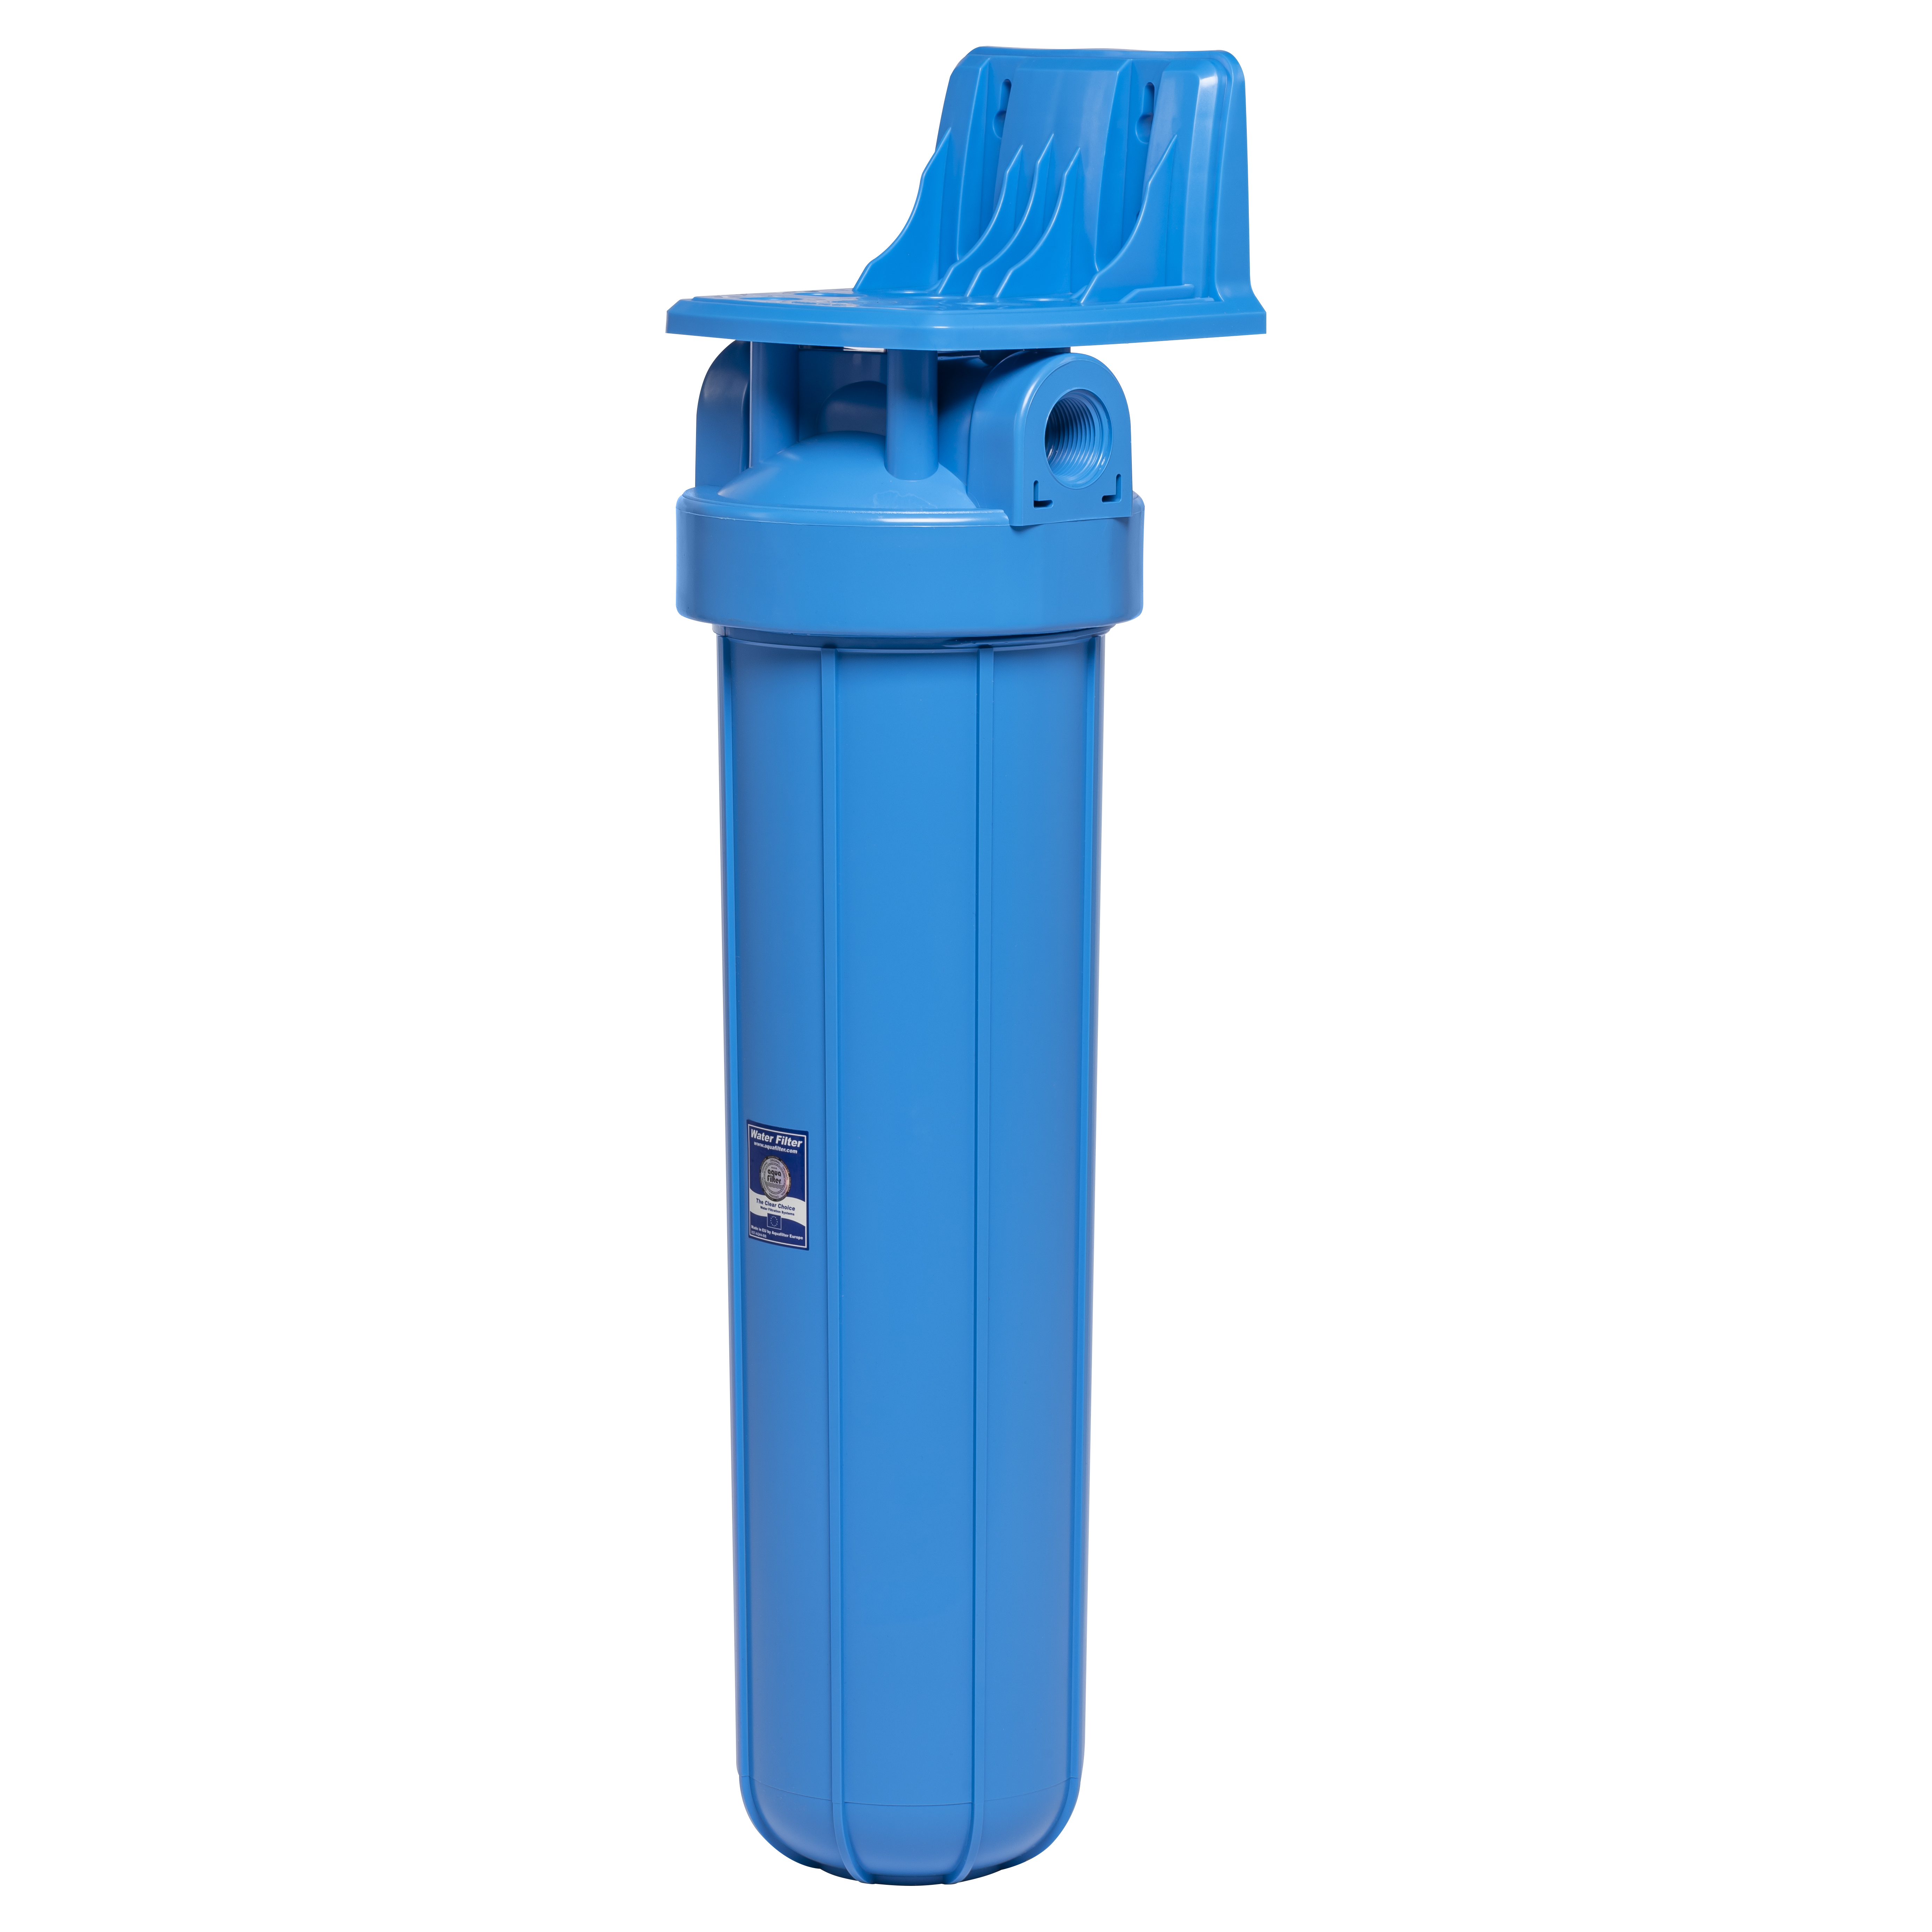 Фильтр-колба Aquafilter для воды Aquafilter FH20B1-WB